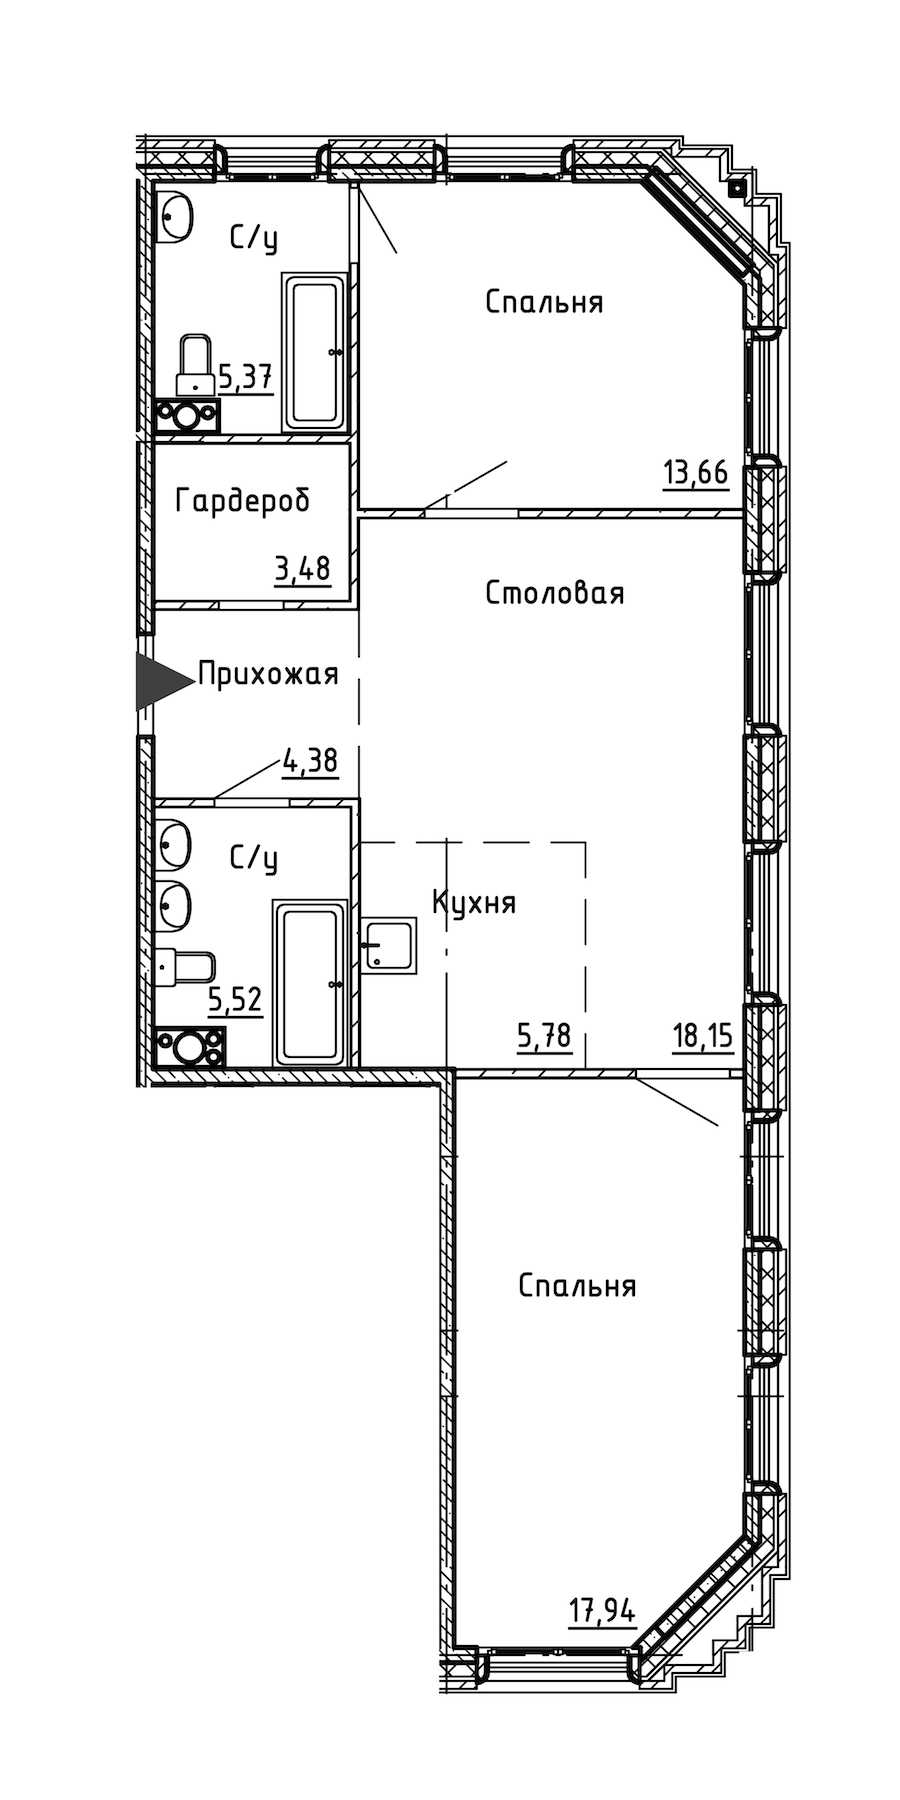 Двухкомнатная квартира в : площадь 74.28 м2 , этаж: 4 – купить в Санкт-Петербурге